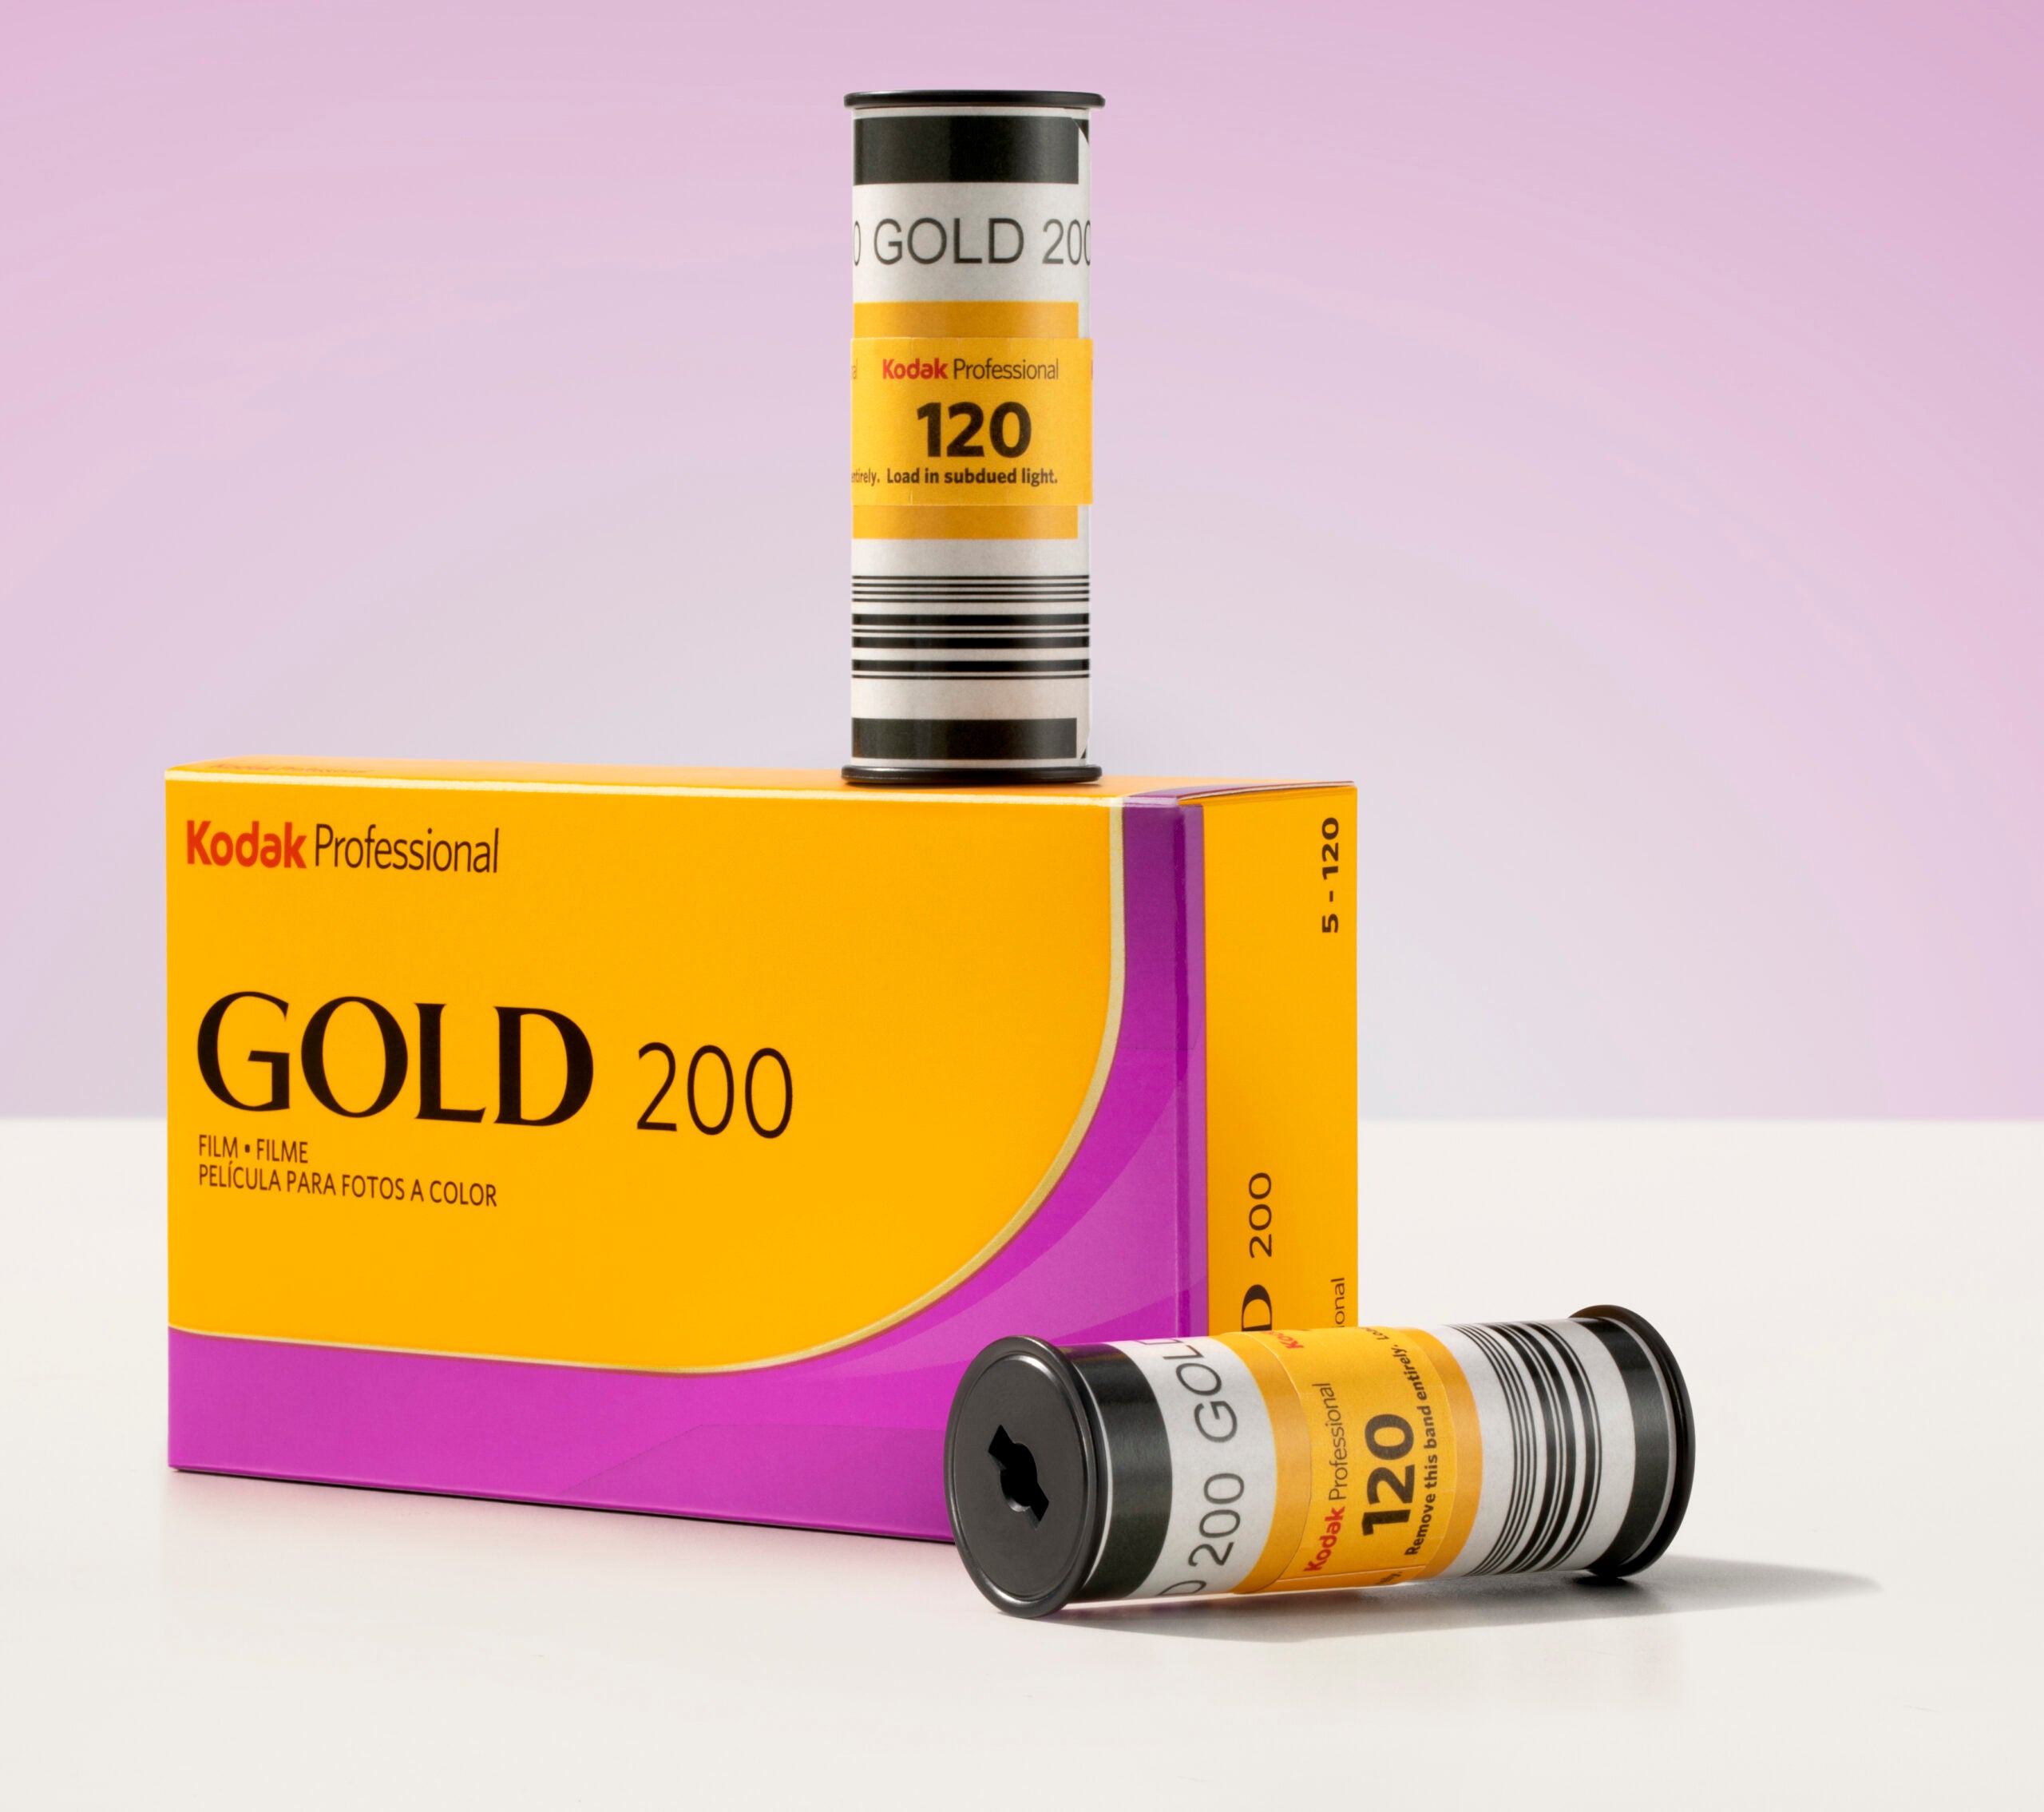 Kodak Gold 200 film rolls sitting on a box